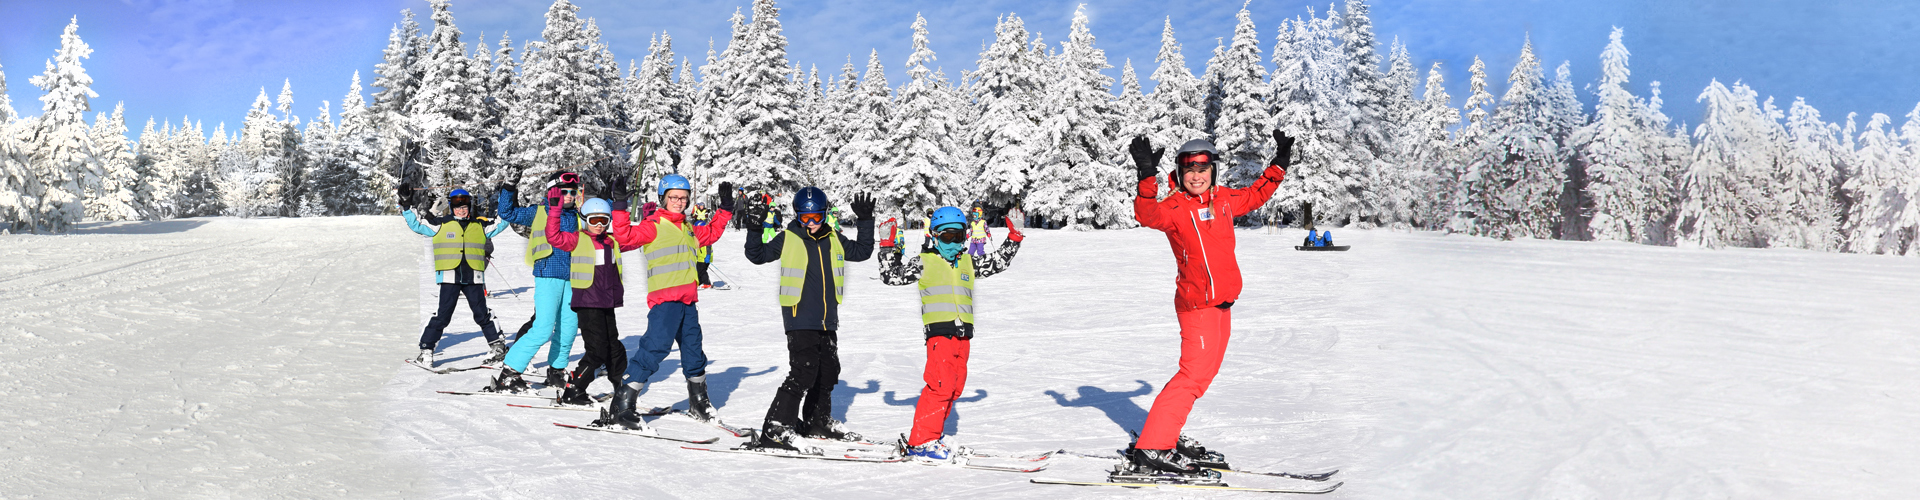 Ski school for children, ski lessons for children